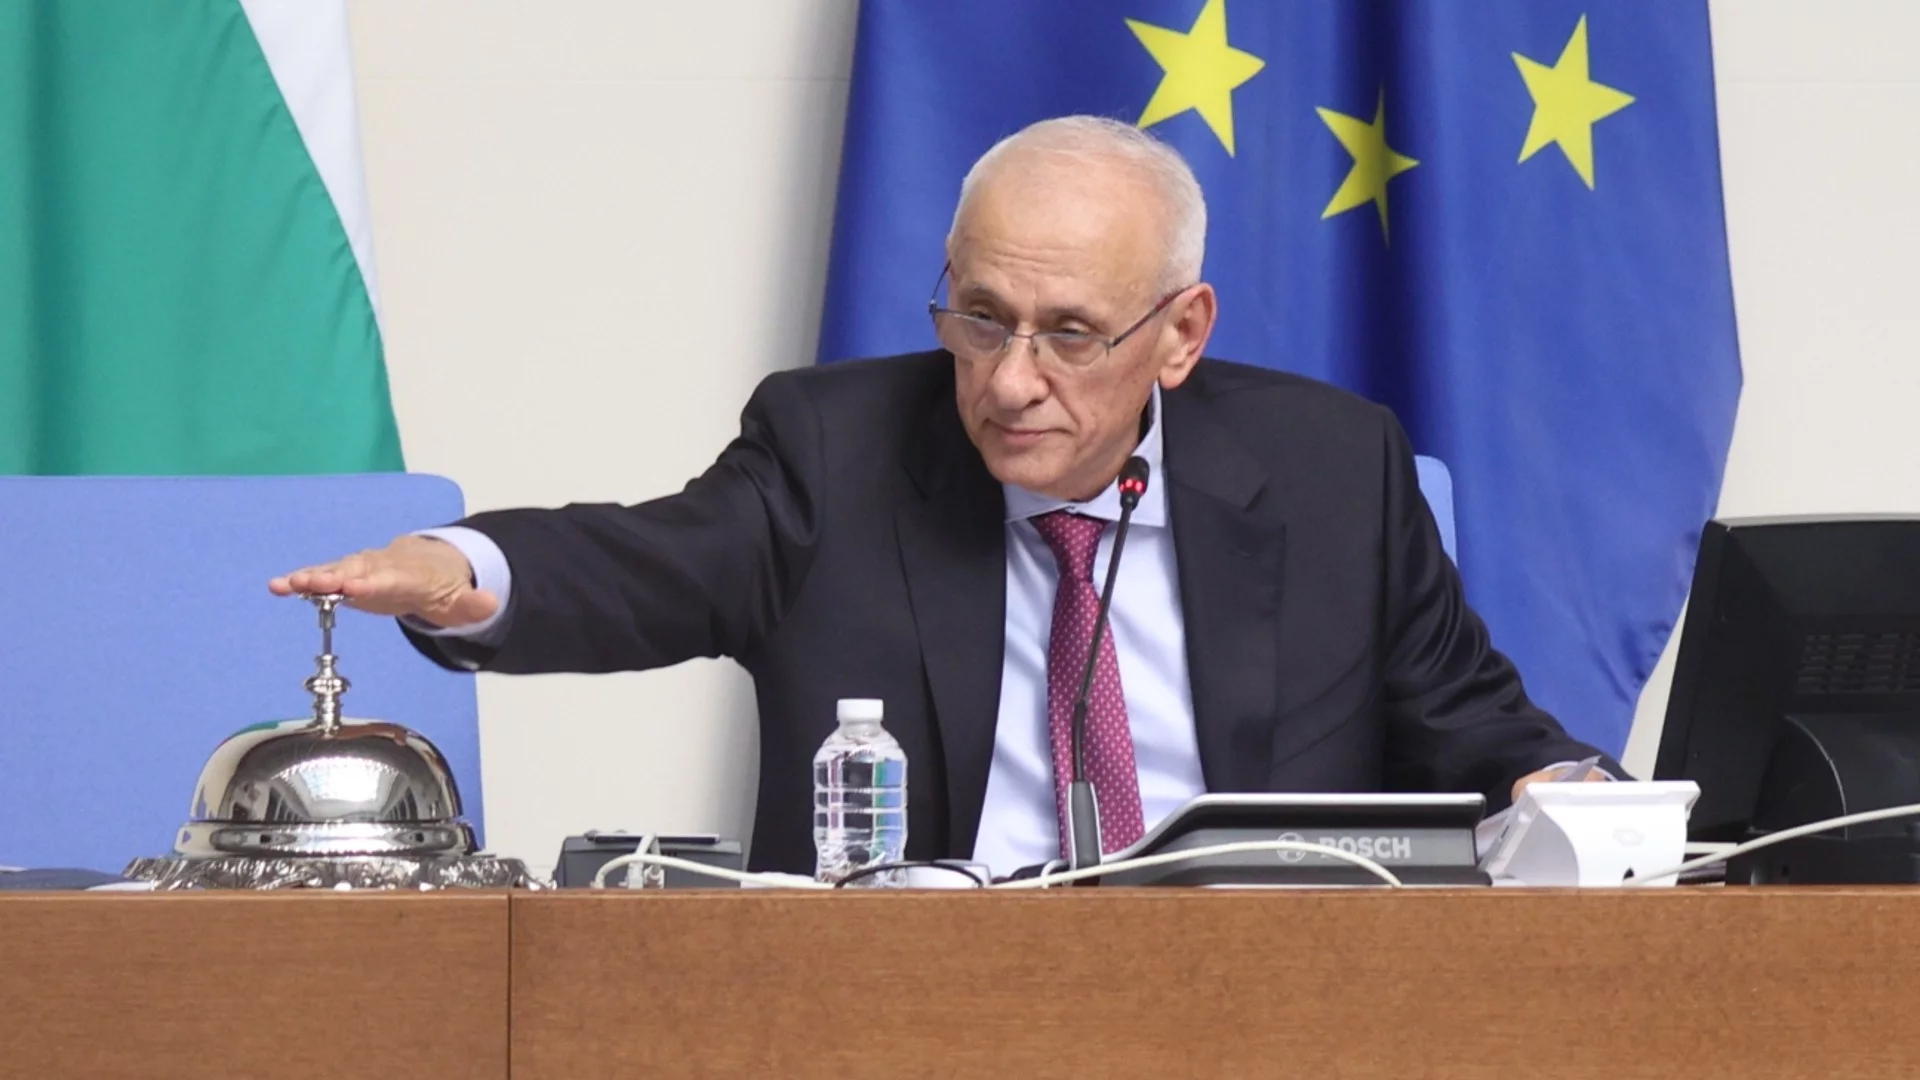 "България е свята и над всичко. Време е за разум": Най-възрастният депутат откри 50-ия парламент